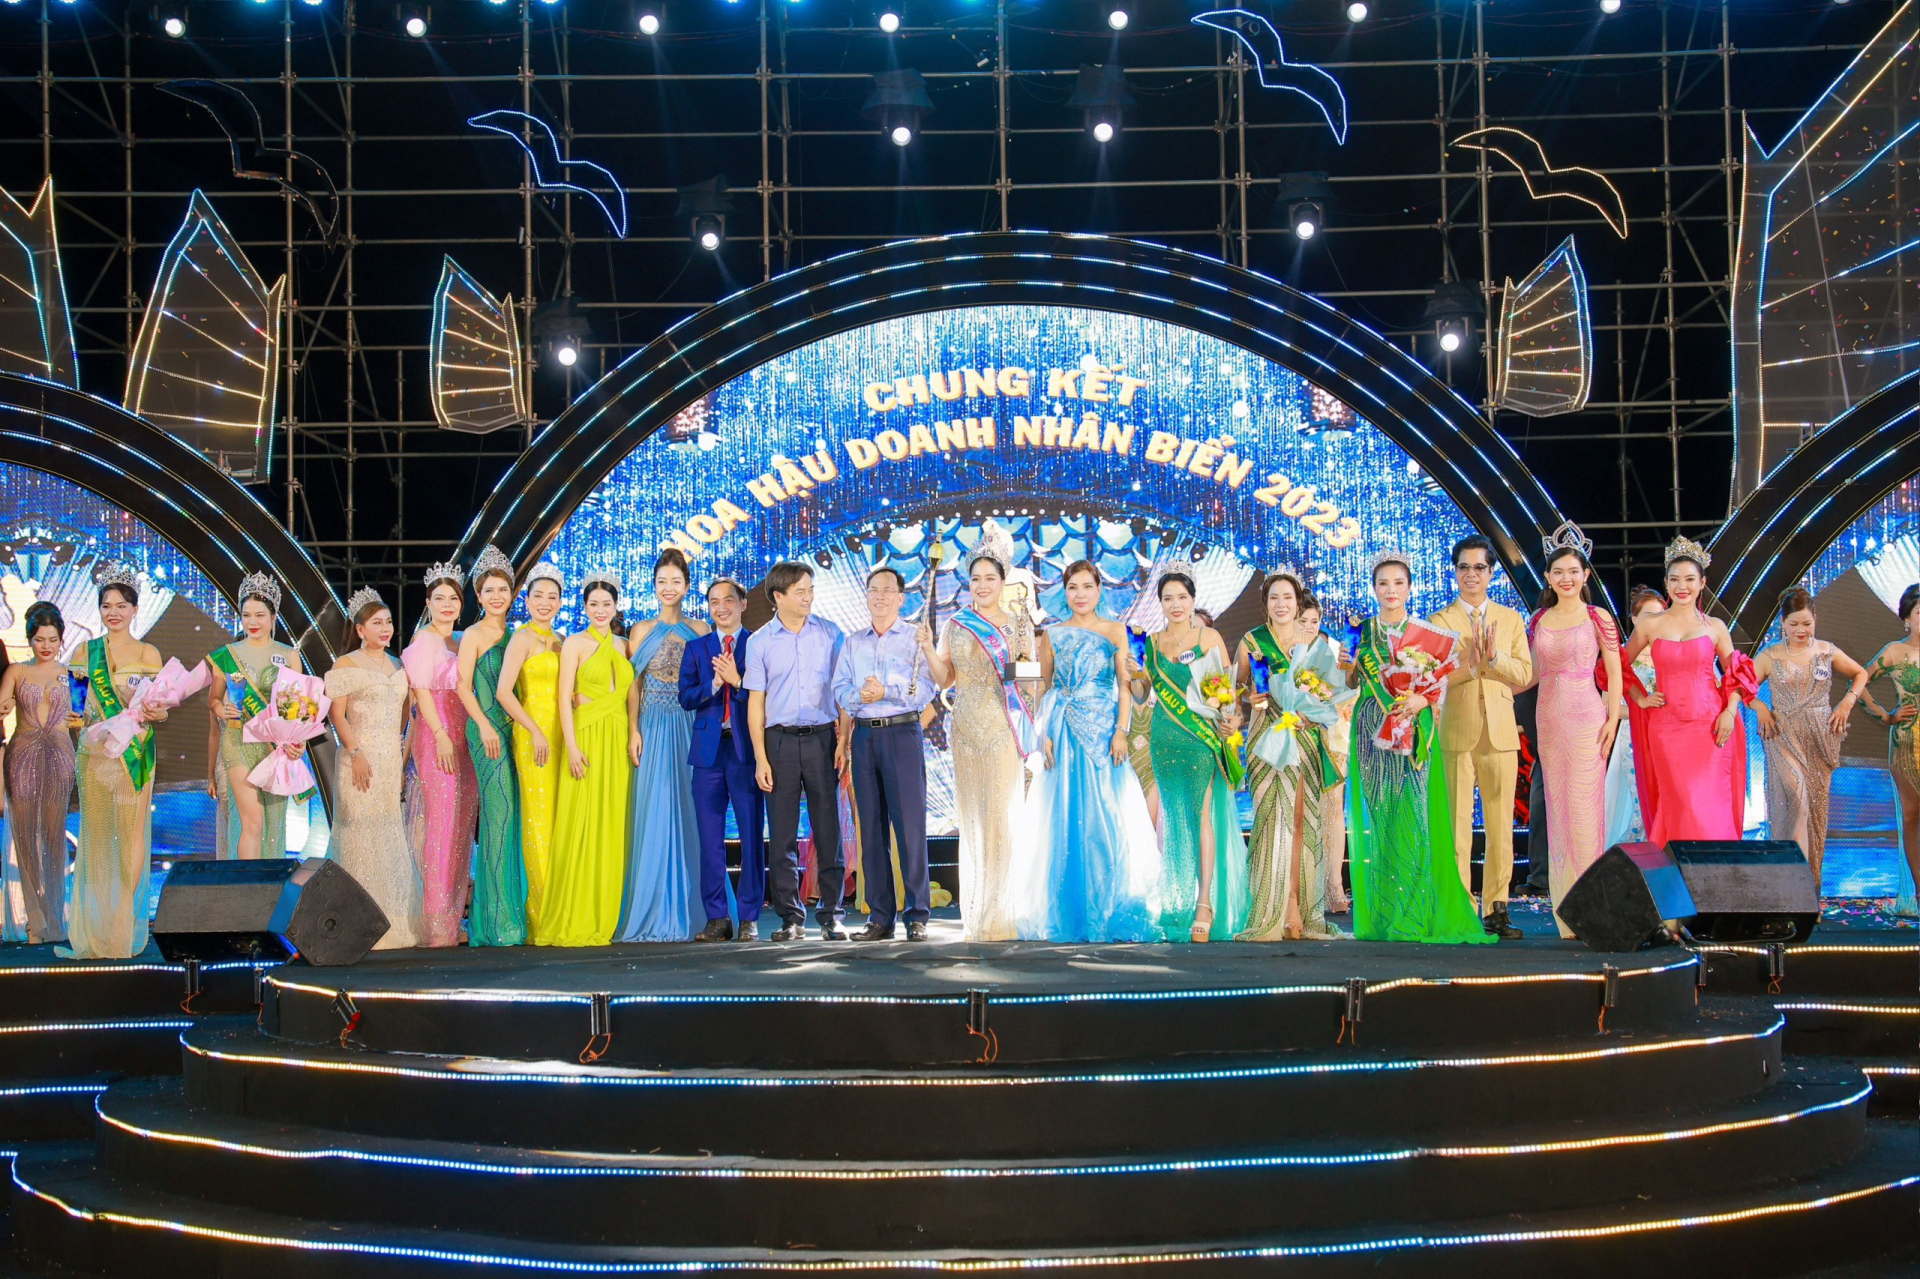 Đăng quang Hoa hậu Doanh nhân Biển 2023, Doanh nhân Trương Thị Tú Anh được trao chiếc vương miện danh giá cùng các vật phẩm như quyền trượng, cúp, sash và hoa đăng quang.